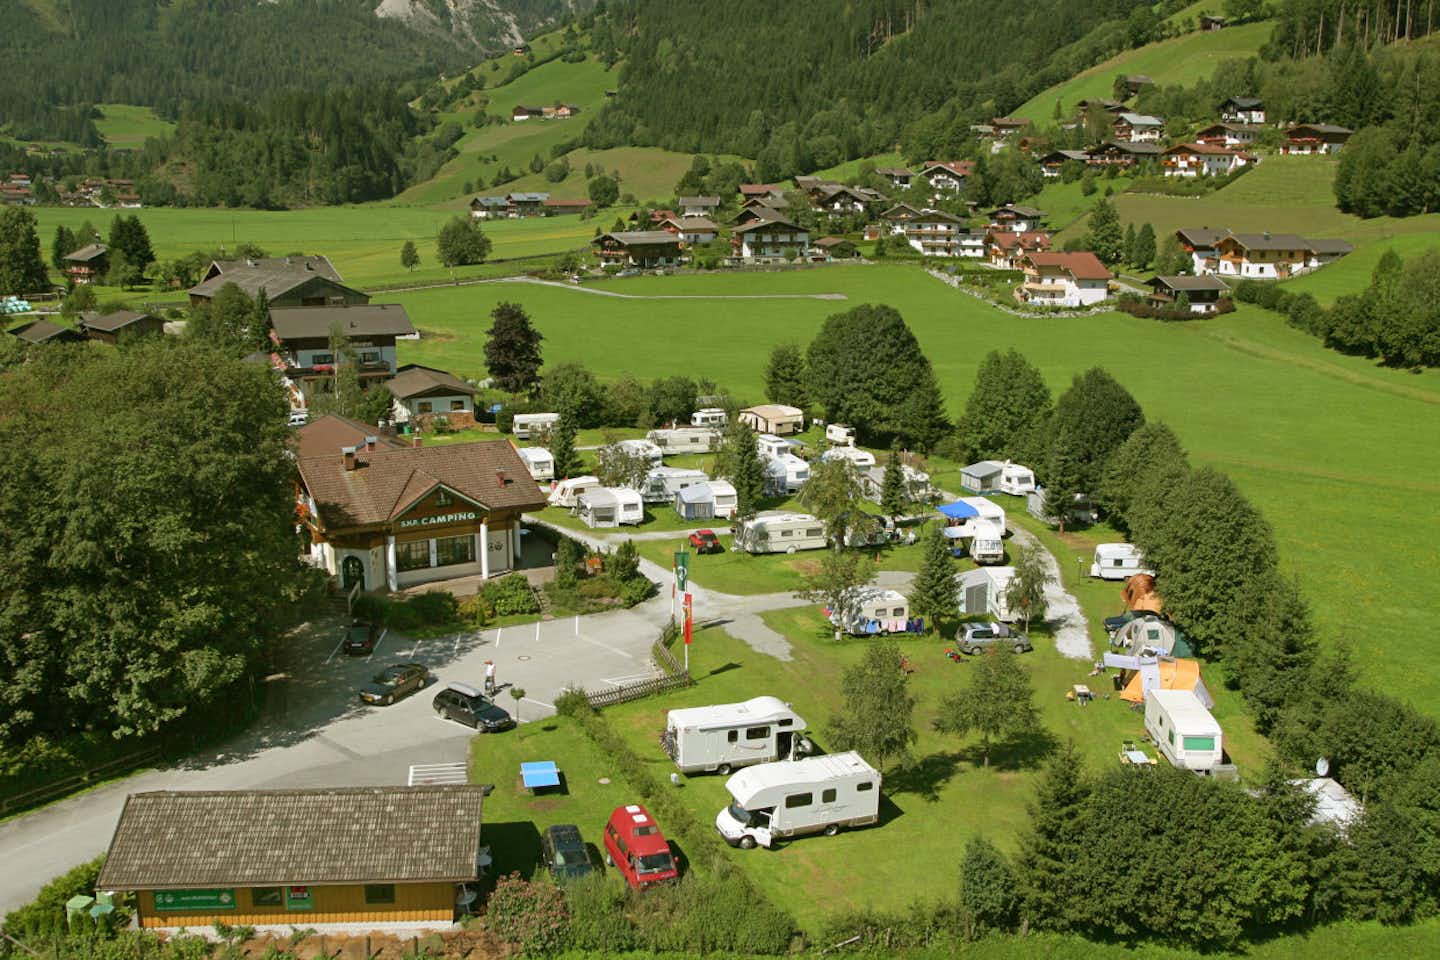 S.N.P. Camping - Blick auf den Campingplatz in den Bergen